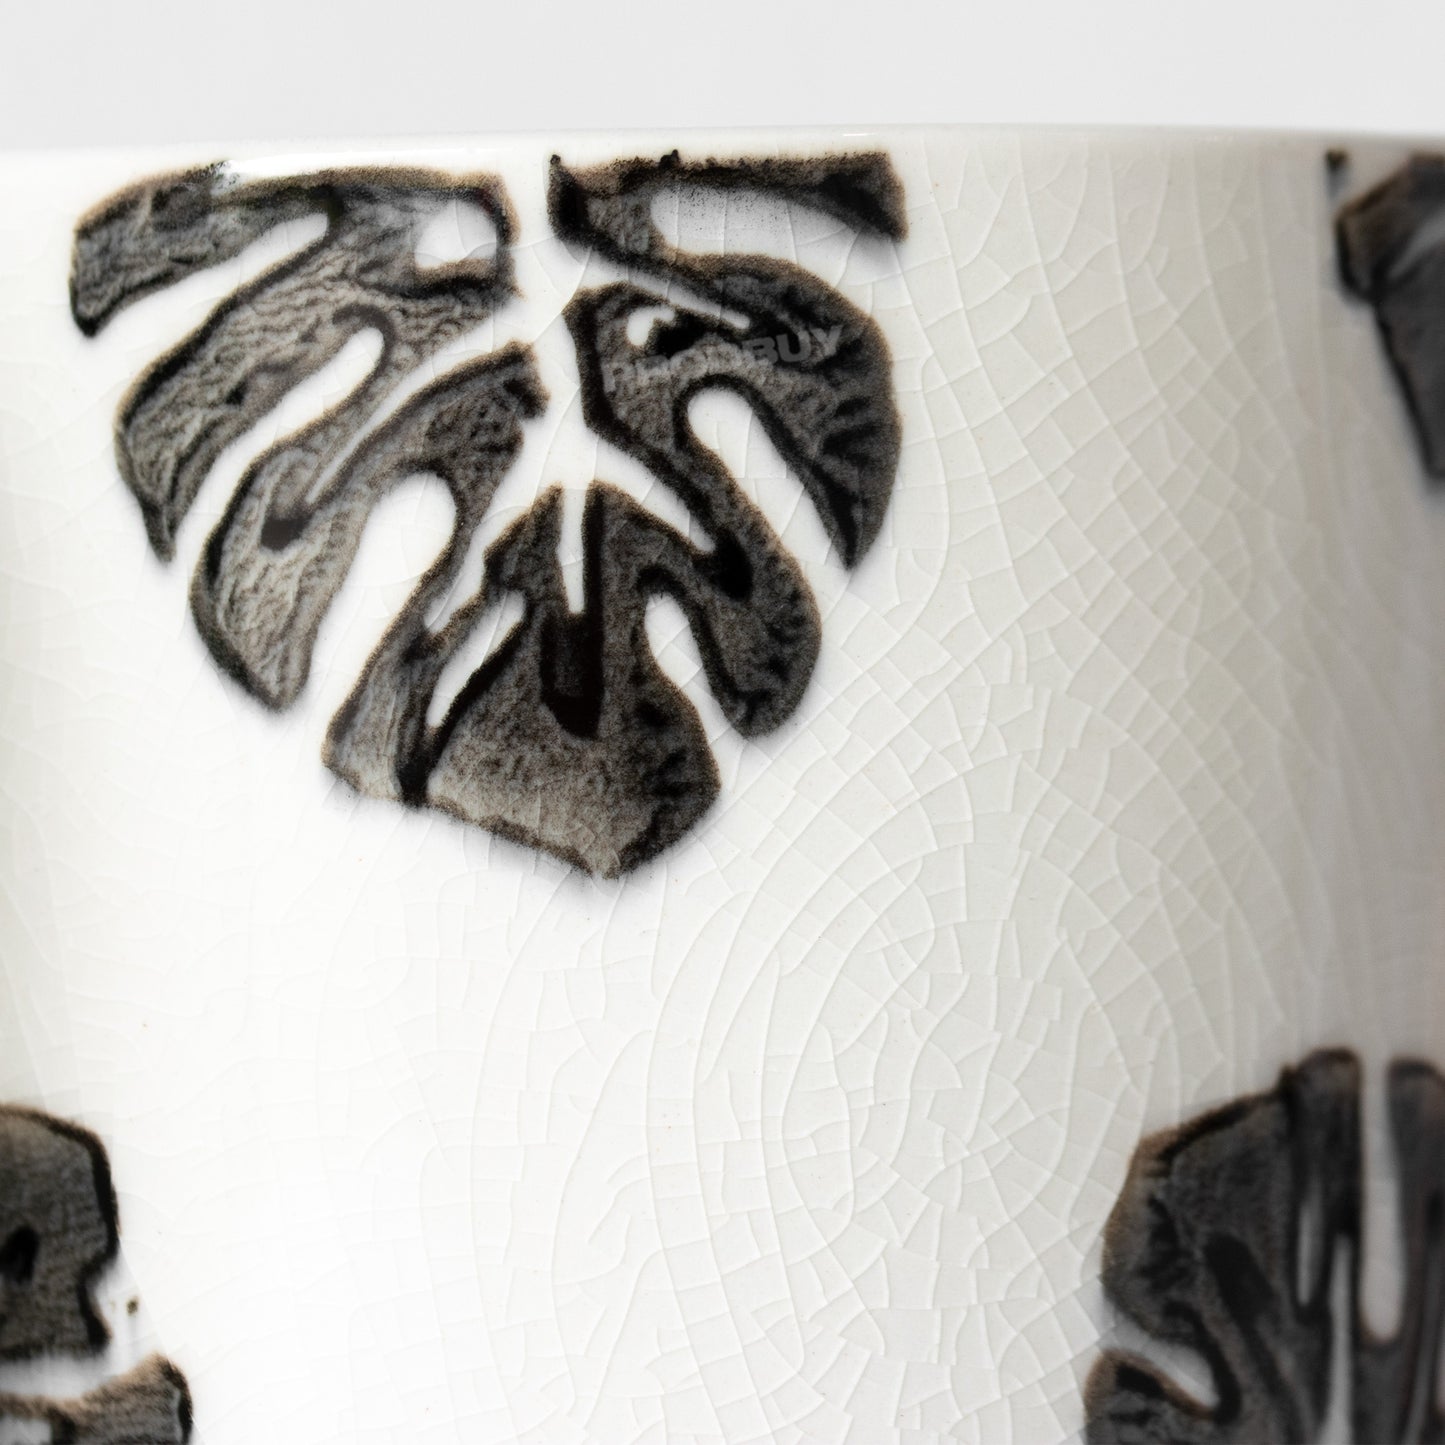 Set of 2 Leaf Crackle Glaze Latte Mugs